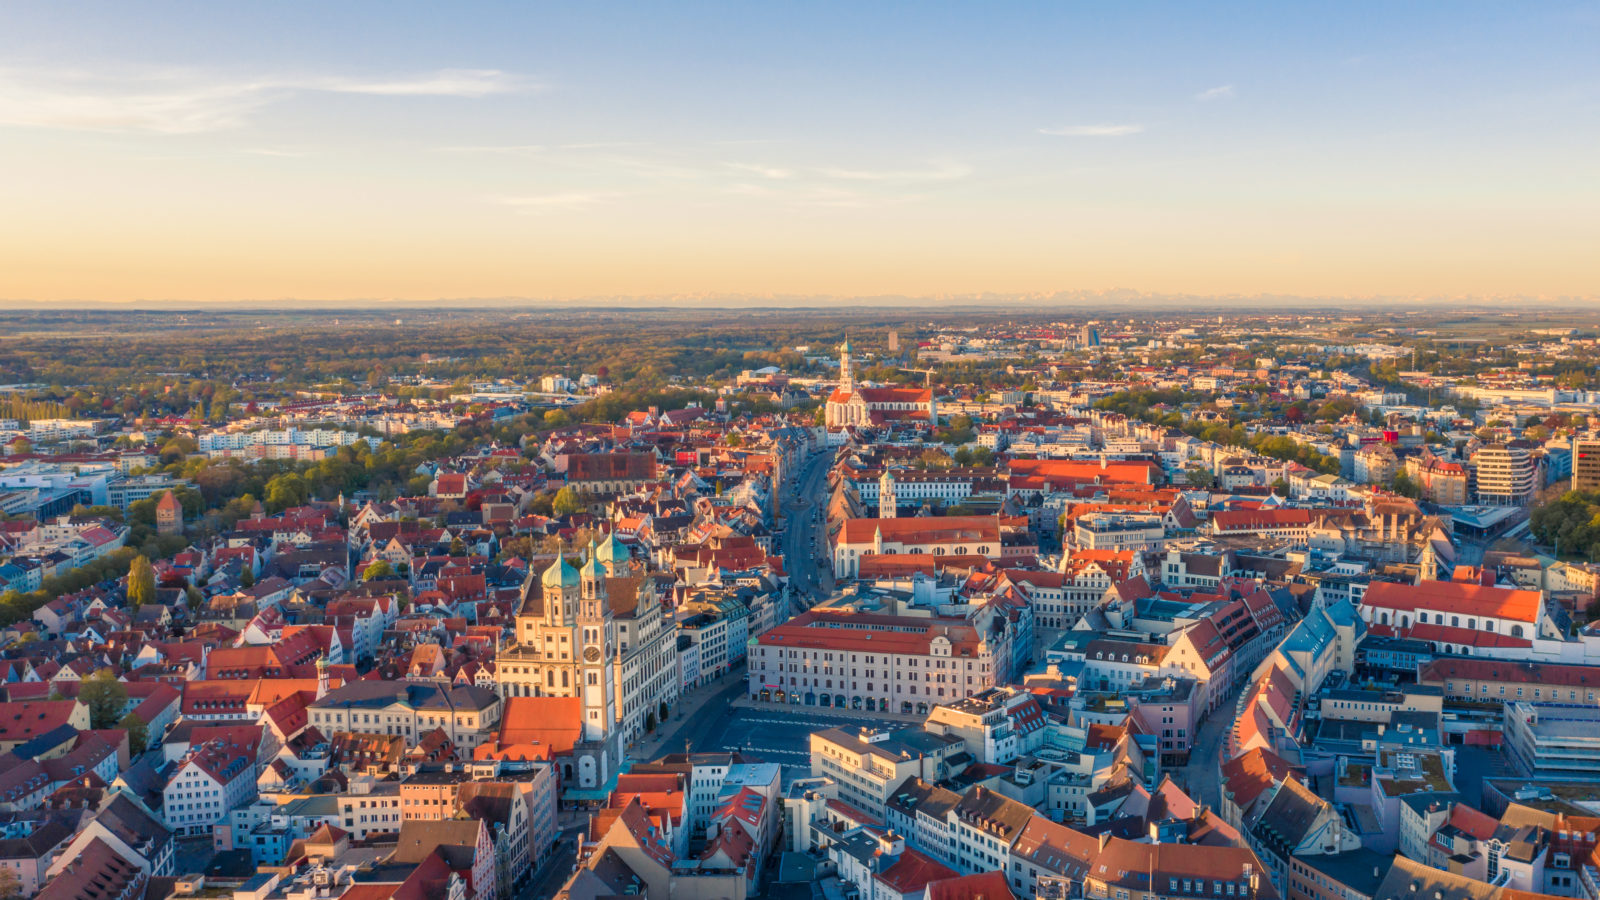 Beitragsbild Stadtentwicklung Augsburg: Augsburg in der Dämmerung von oben